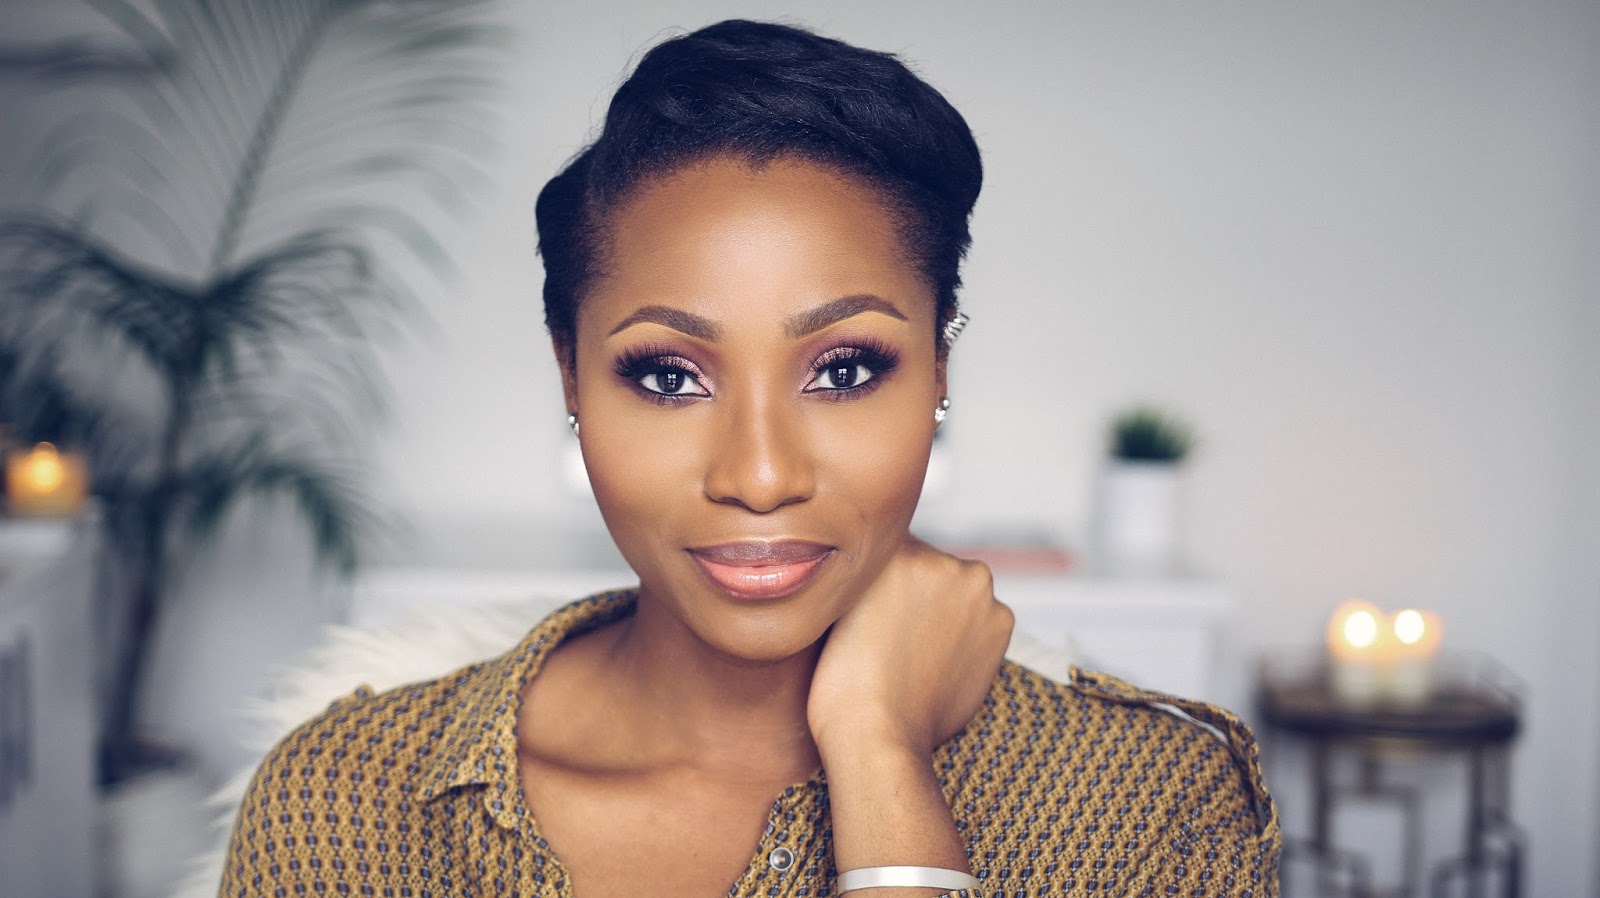 I CUT MY HAIR | Dimma Umeh | Nigerian beauty blogger, fashion ...